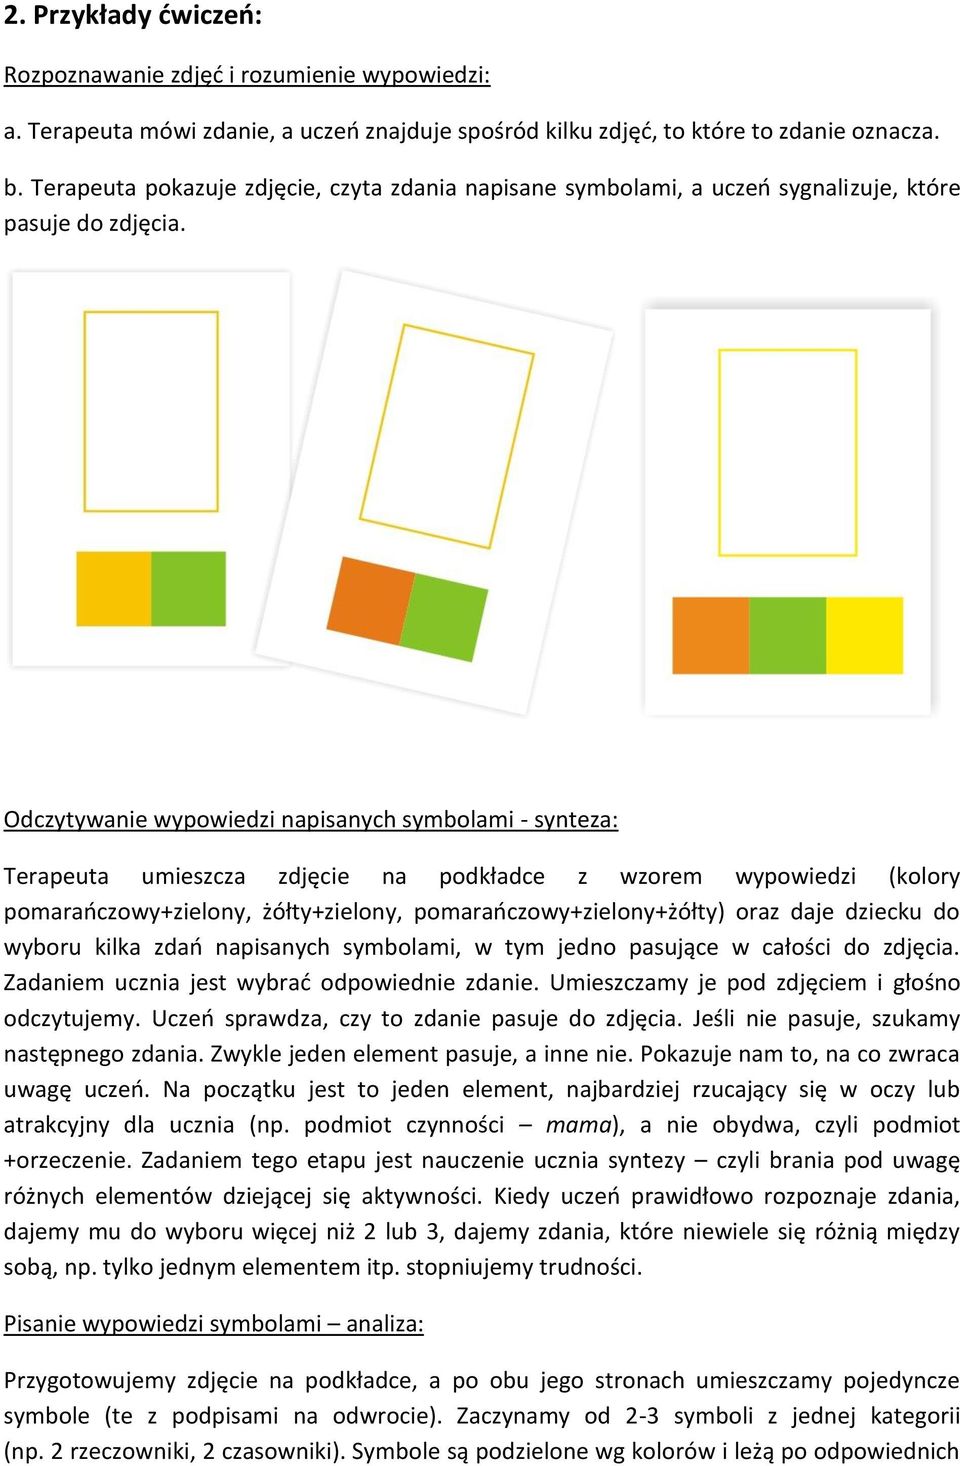 Odczytywanie wypowiedzi napisanych symbolami - synteza: Terapeuta umieszcza zdjęcie na podkładce z wzorem wypowiedzi (kolory pomarańczowy+zielony, żółty+zielony, pomarańczowy+zielony+żółty) oraz daje